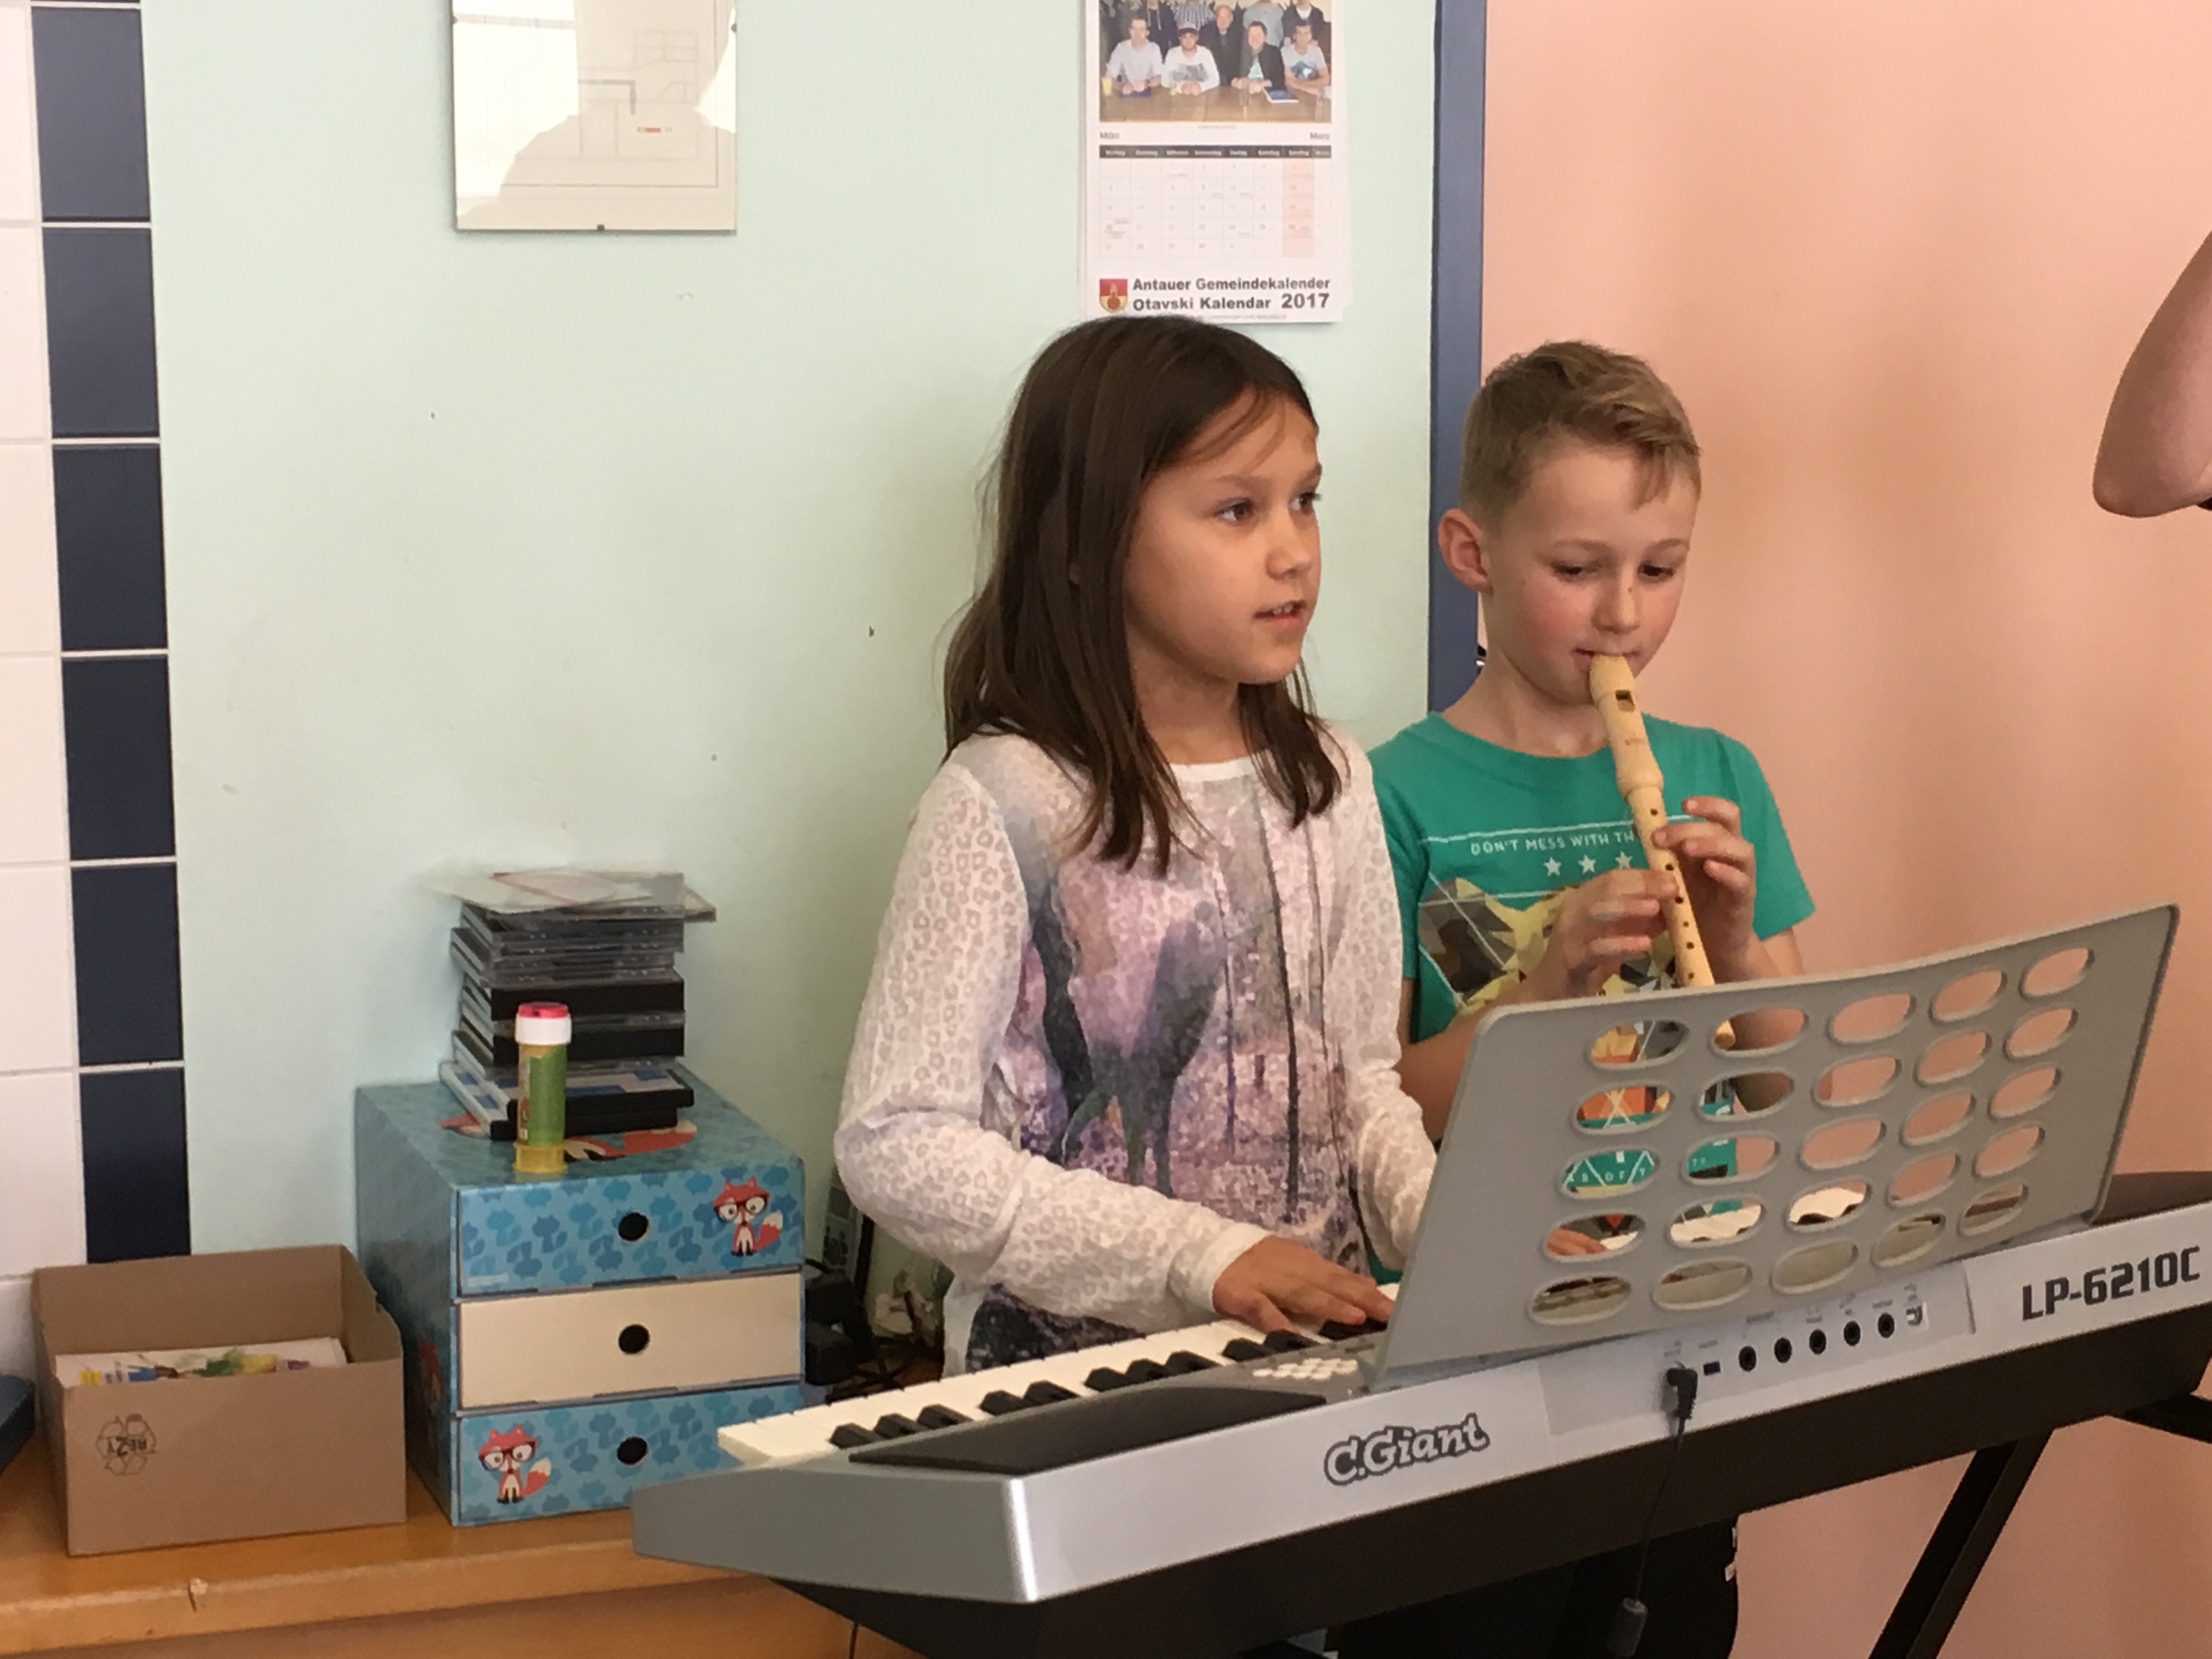 Kinder mit Musikinstrumenten